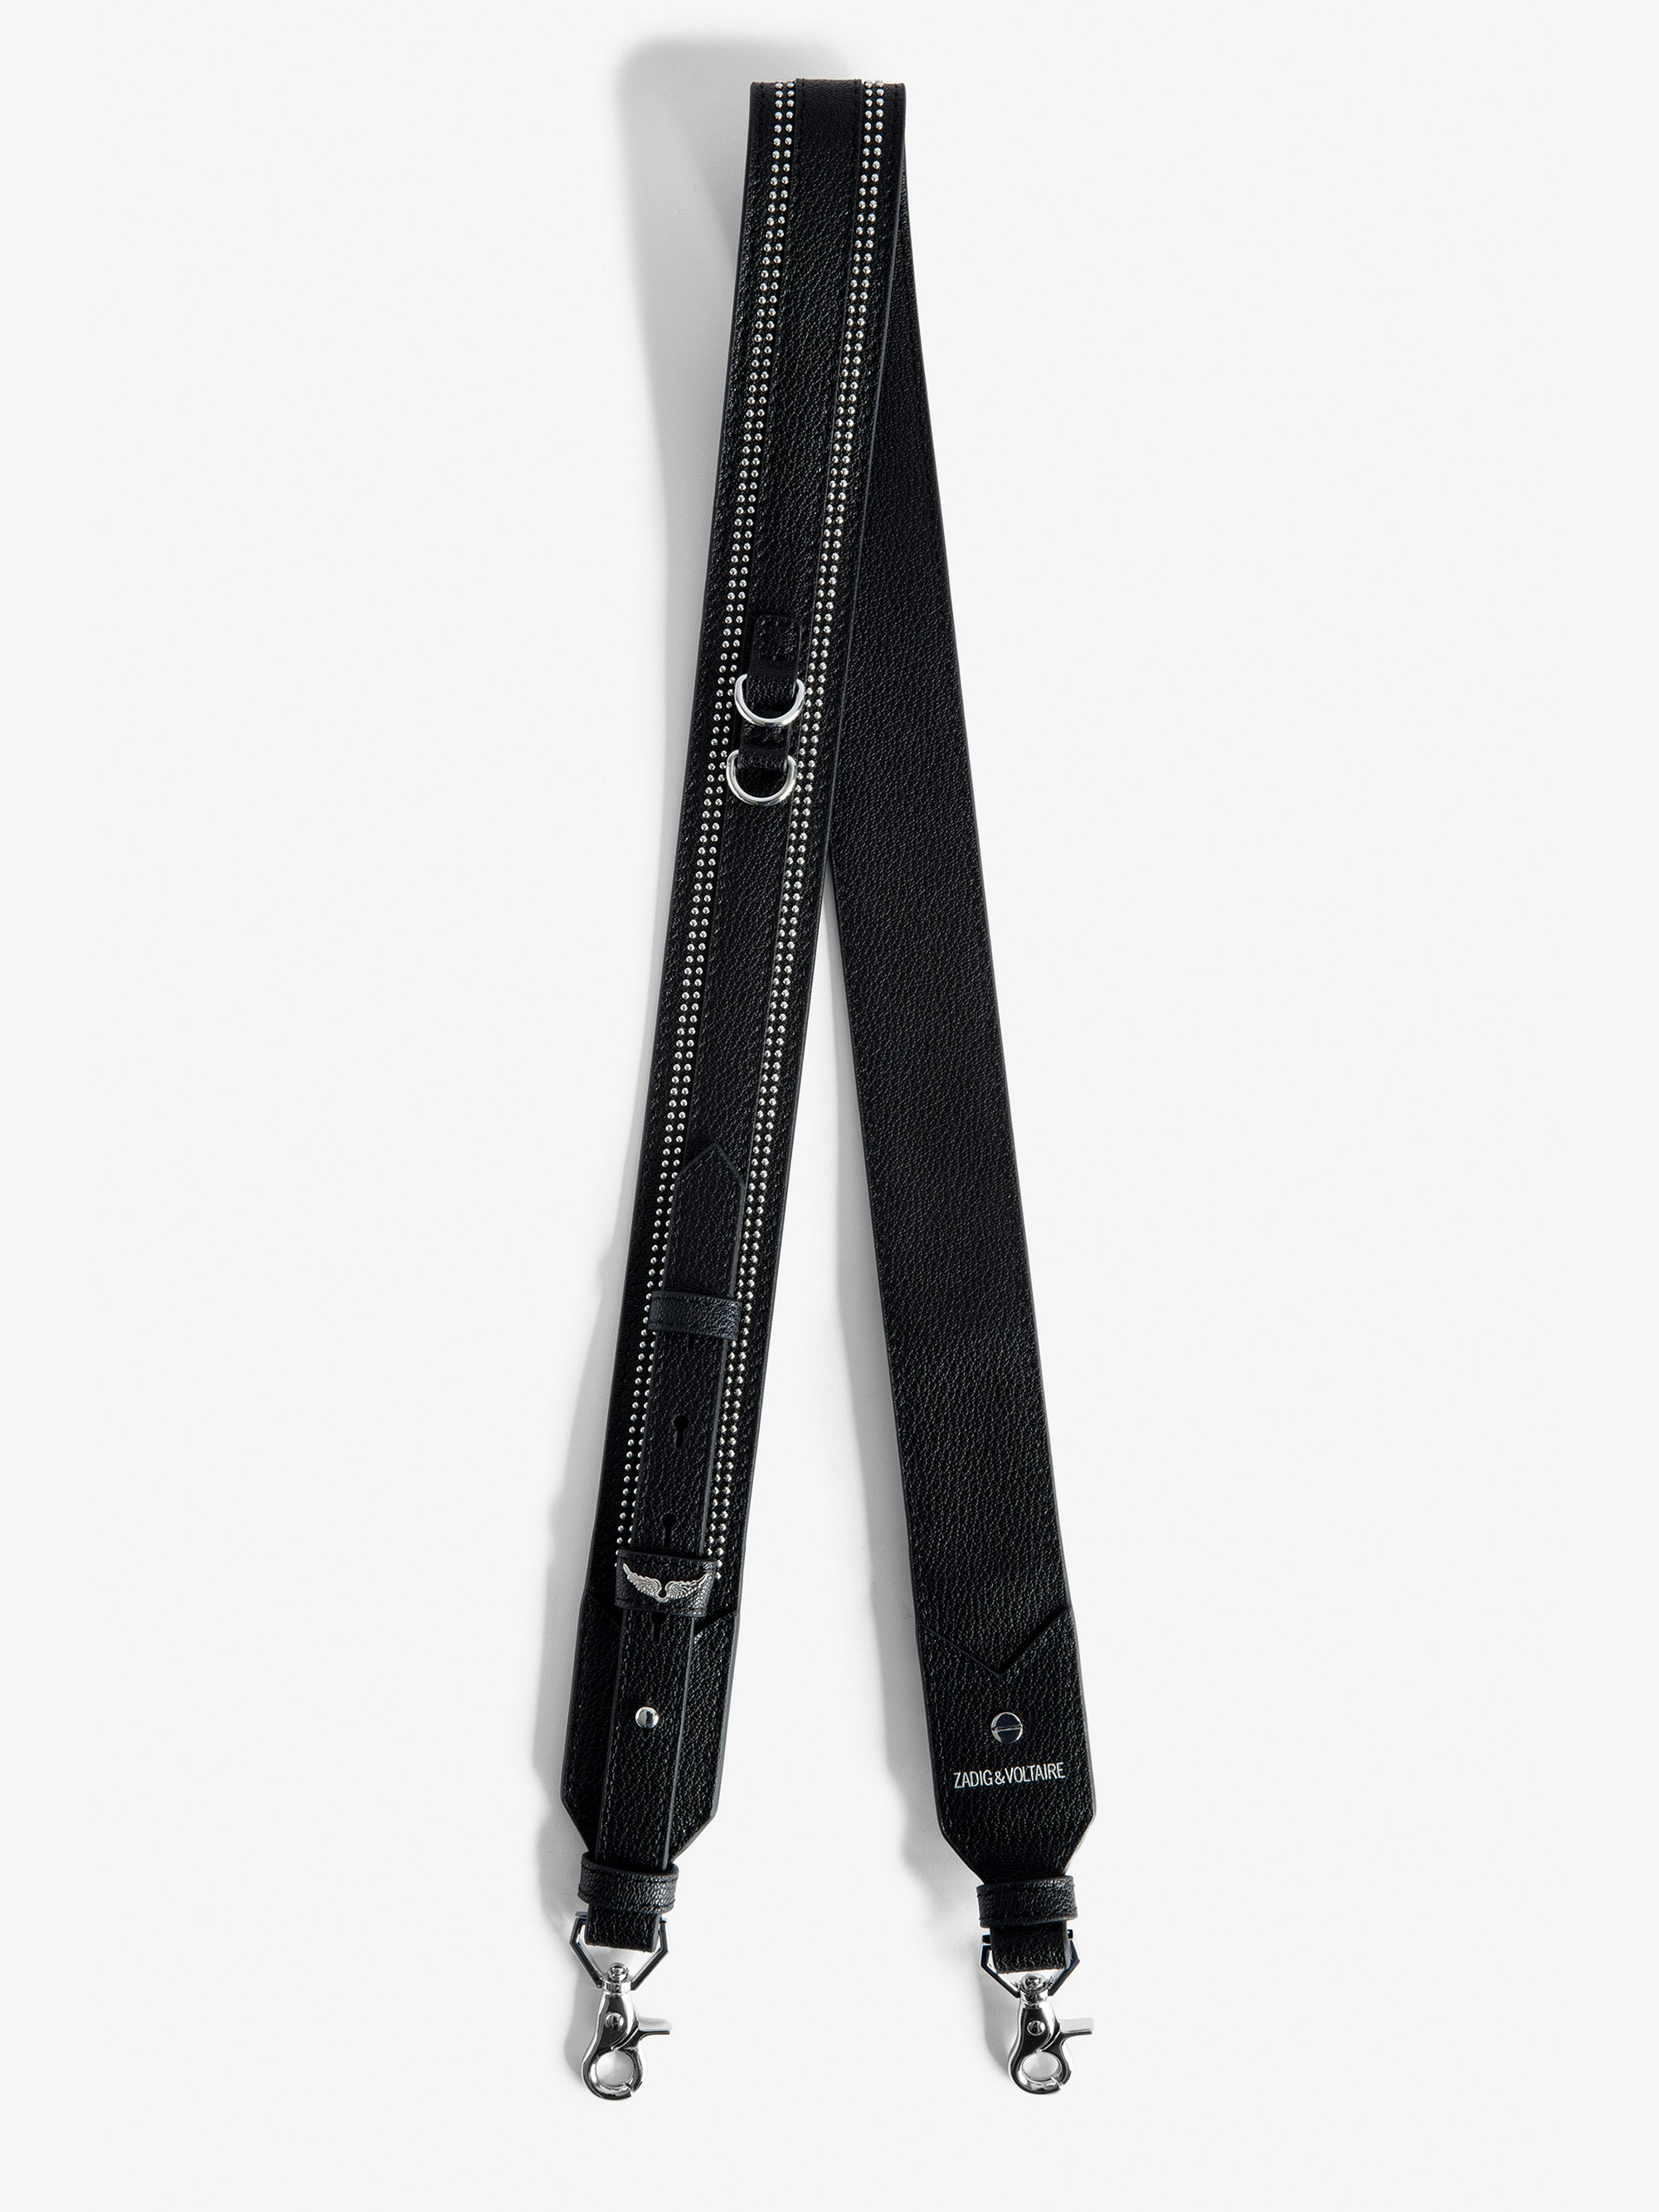 Adjustable Shoulder Strap - Women’s adjustable black grained leather shoulder strap with studded trim.